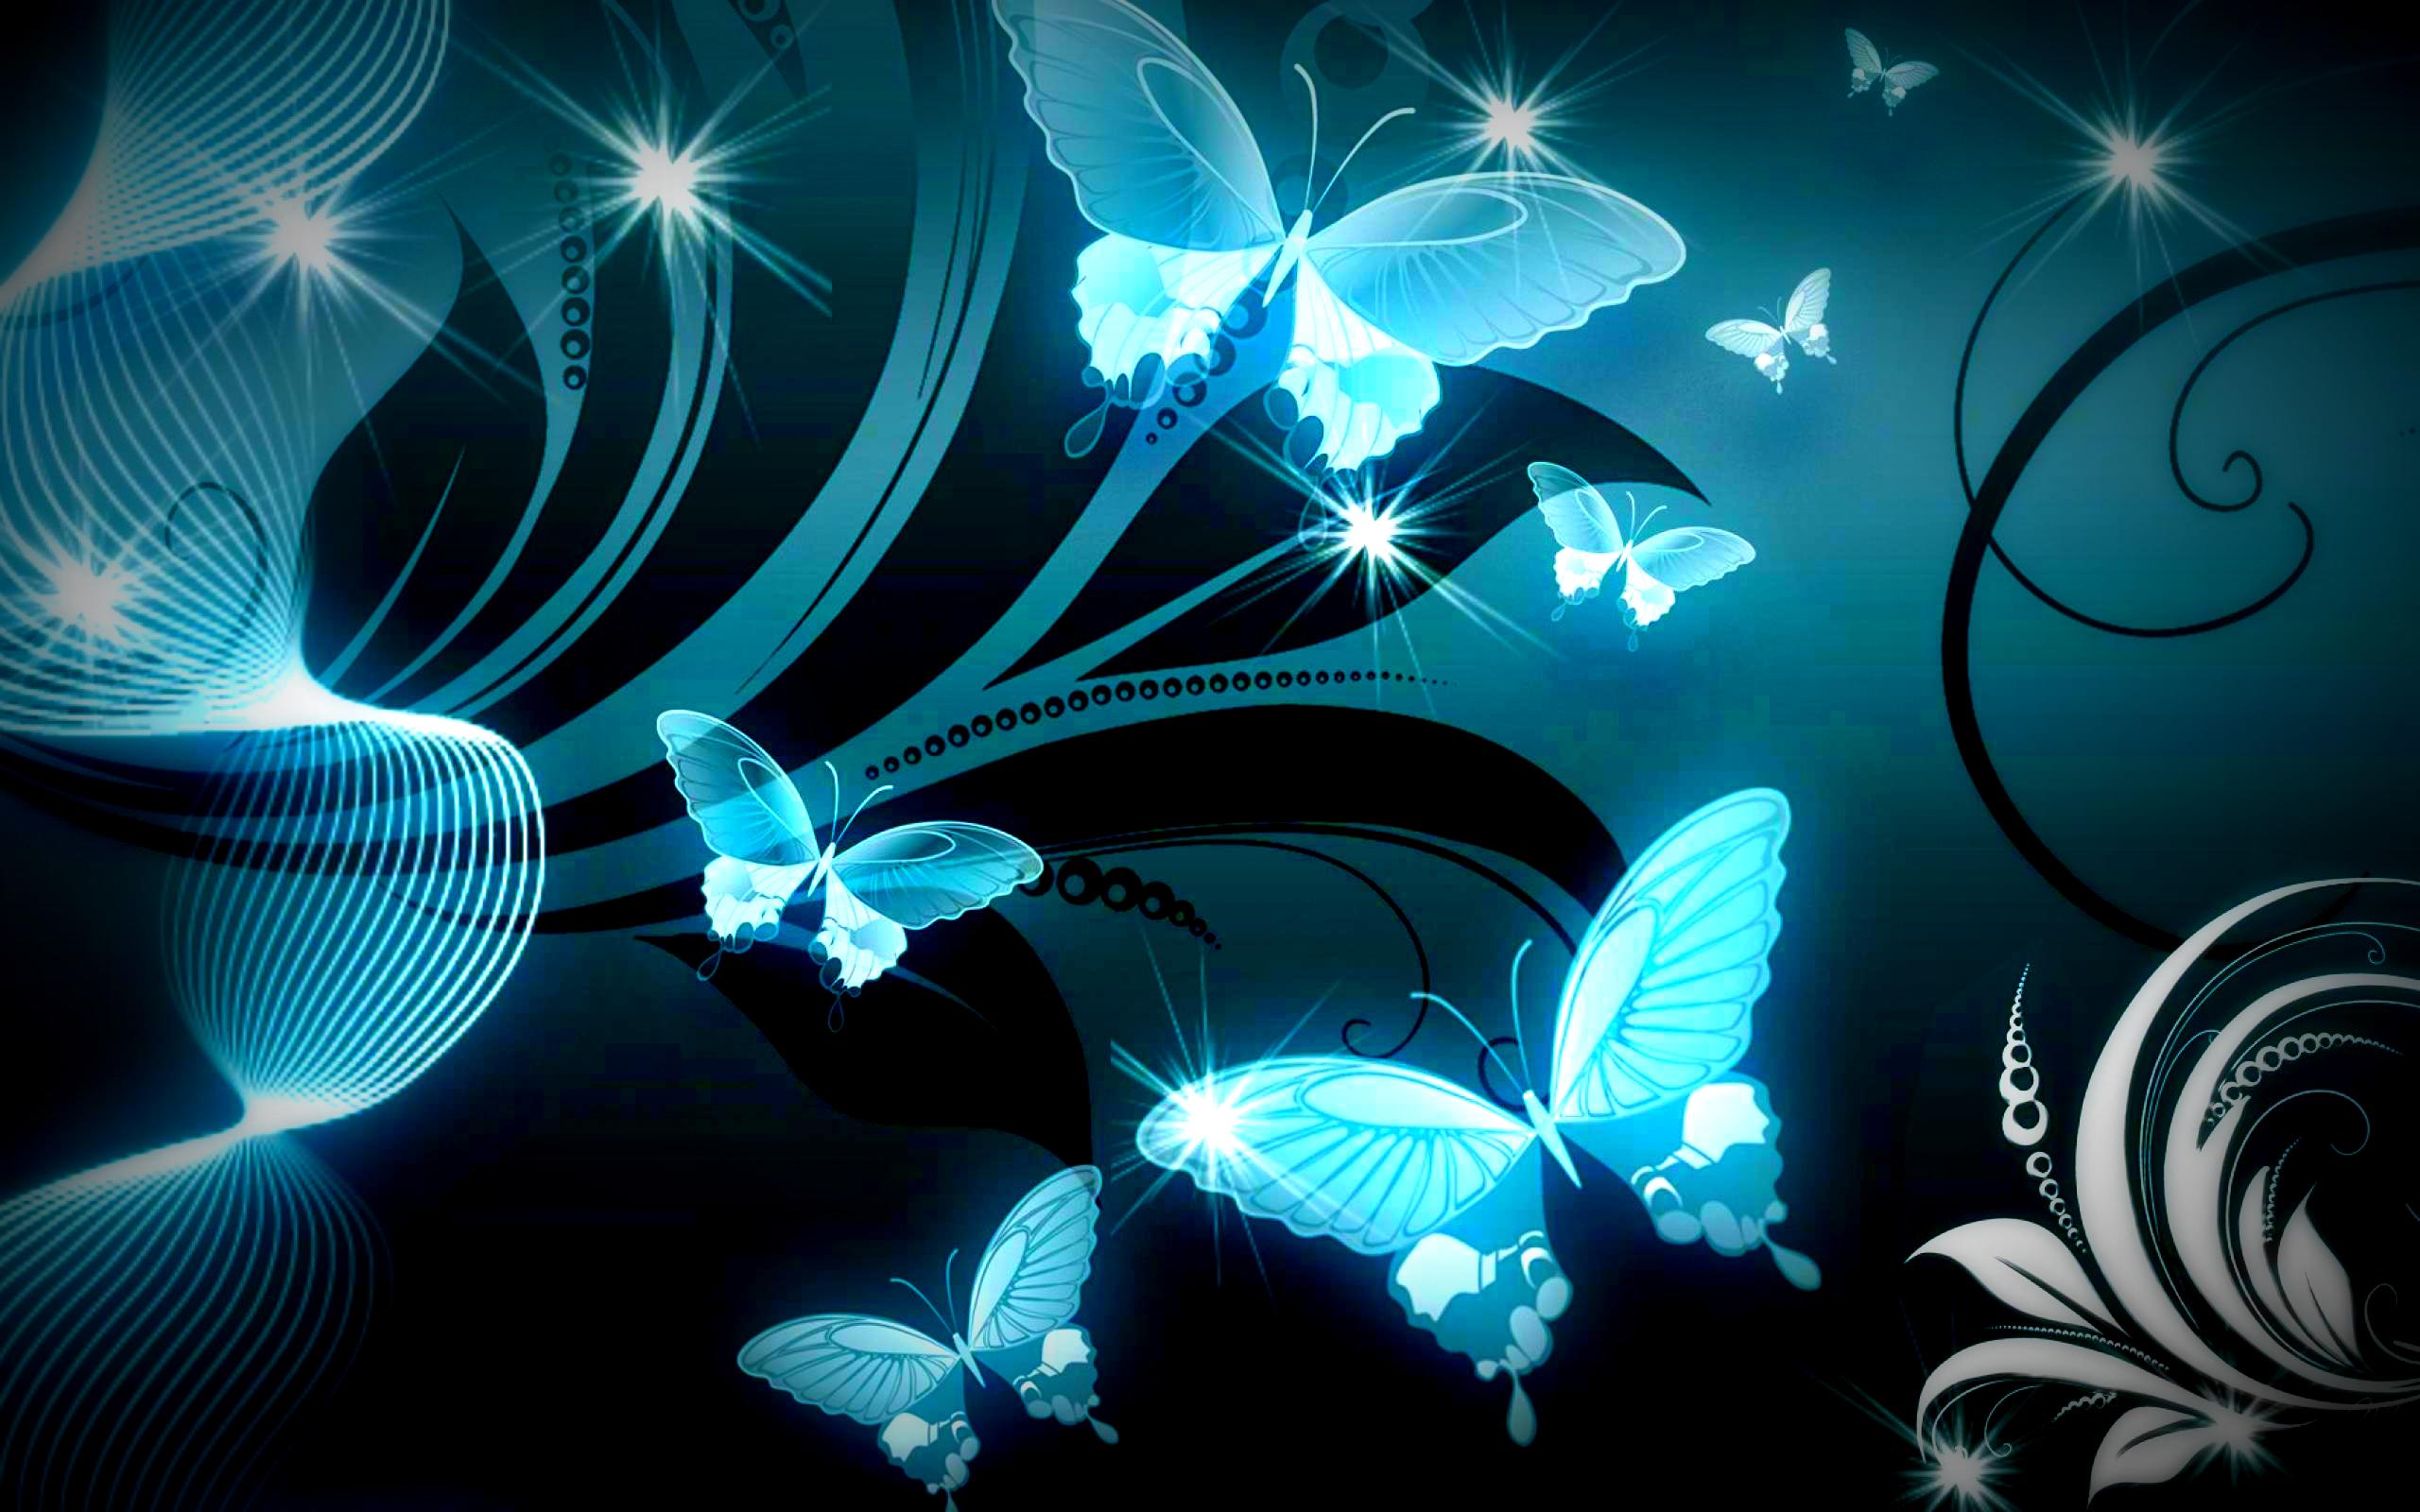 Blue Butterfly Desktop Wallpaper .wallpaperaccess.com